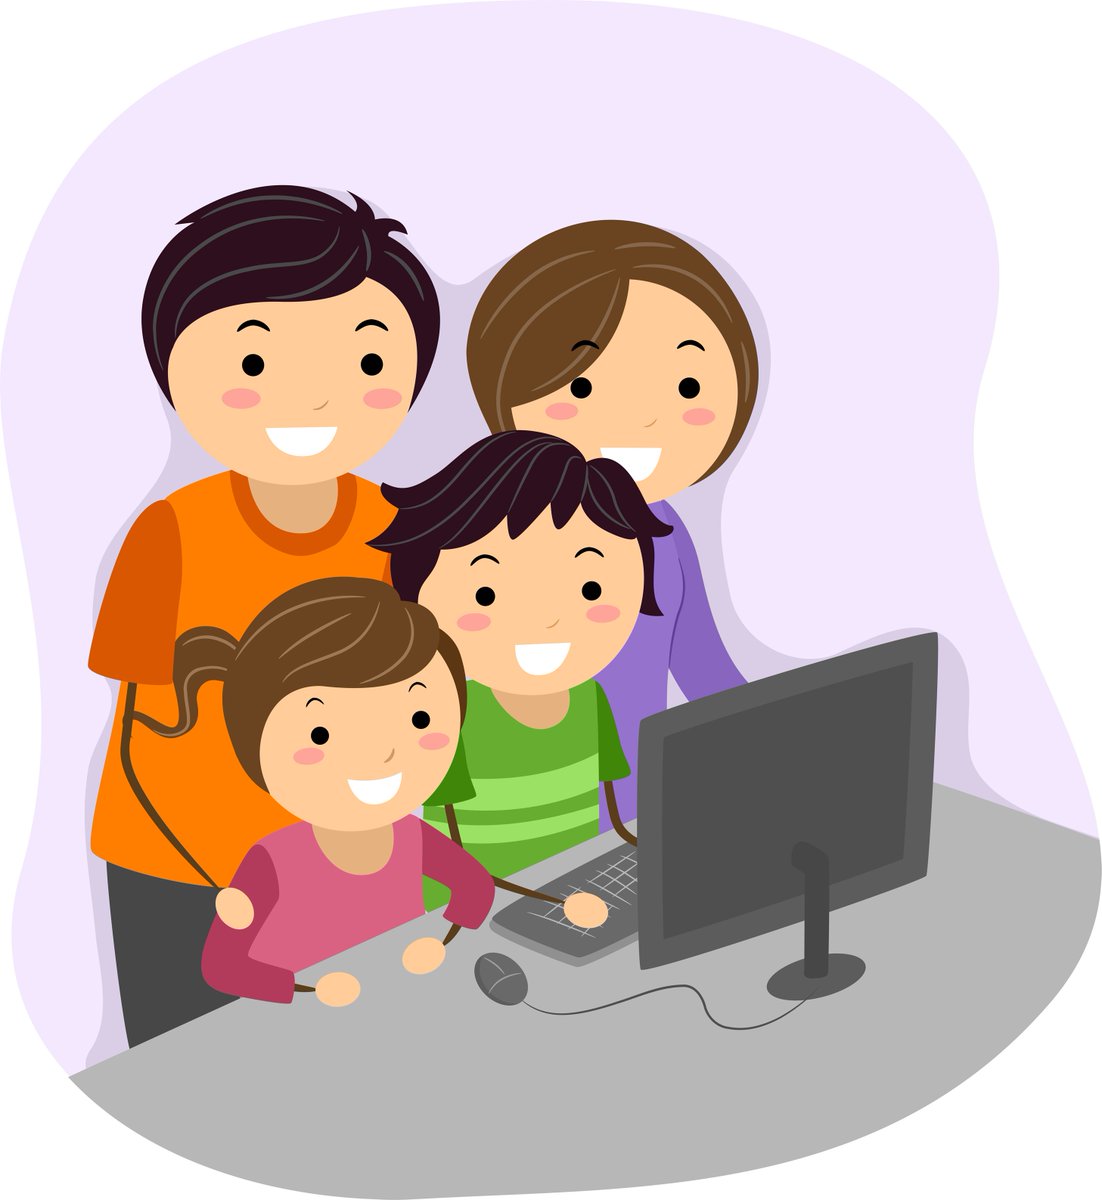 В рамках областной акции "Семья - это то, что с тобой навсегда" приглашаем всех желающих принять участие в онлайн - мероприятиях, посвященных Международному Дню семьи